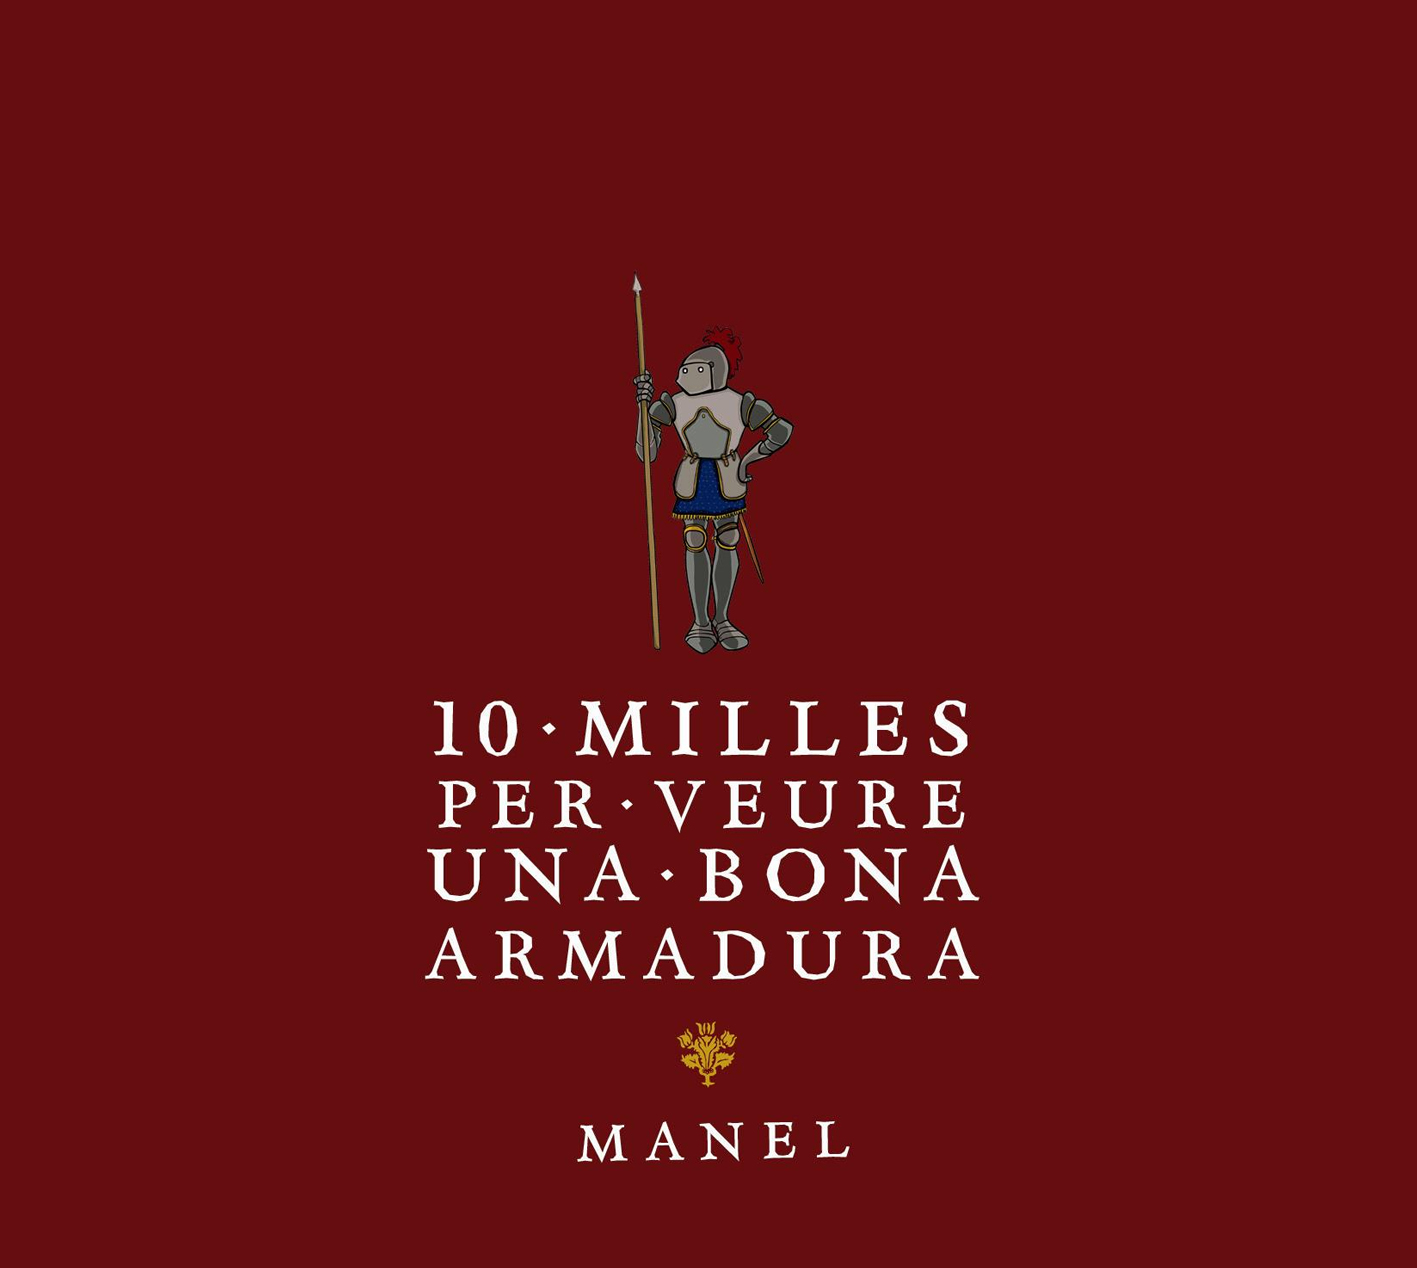 Manel "10 Milles per Veure una Bona Armadura" CD